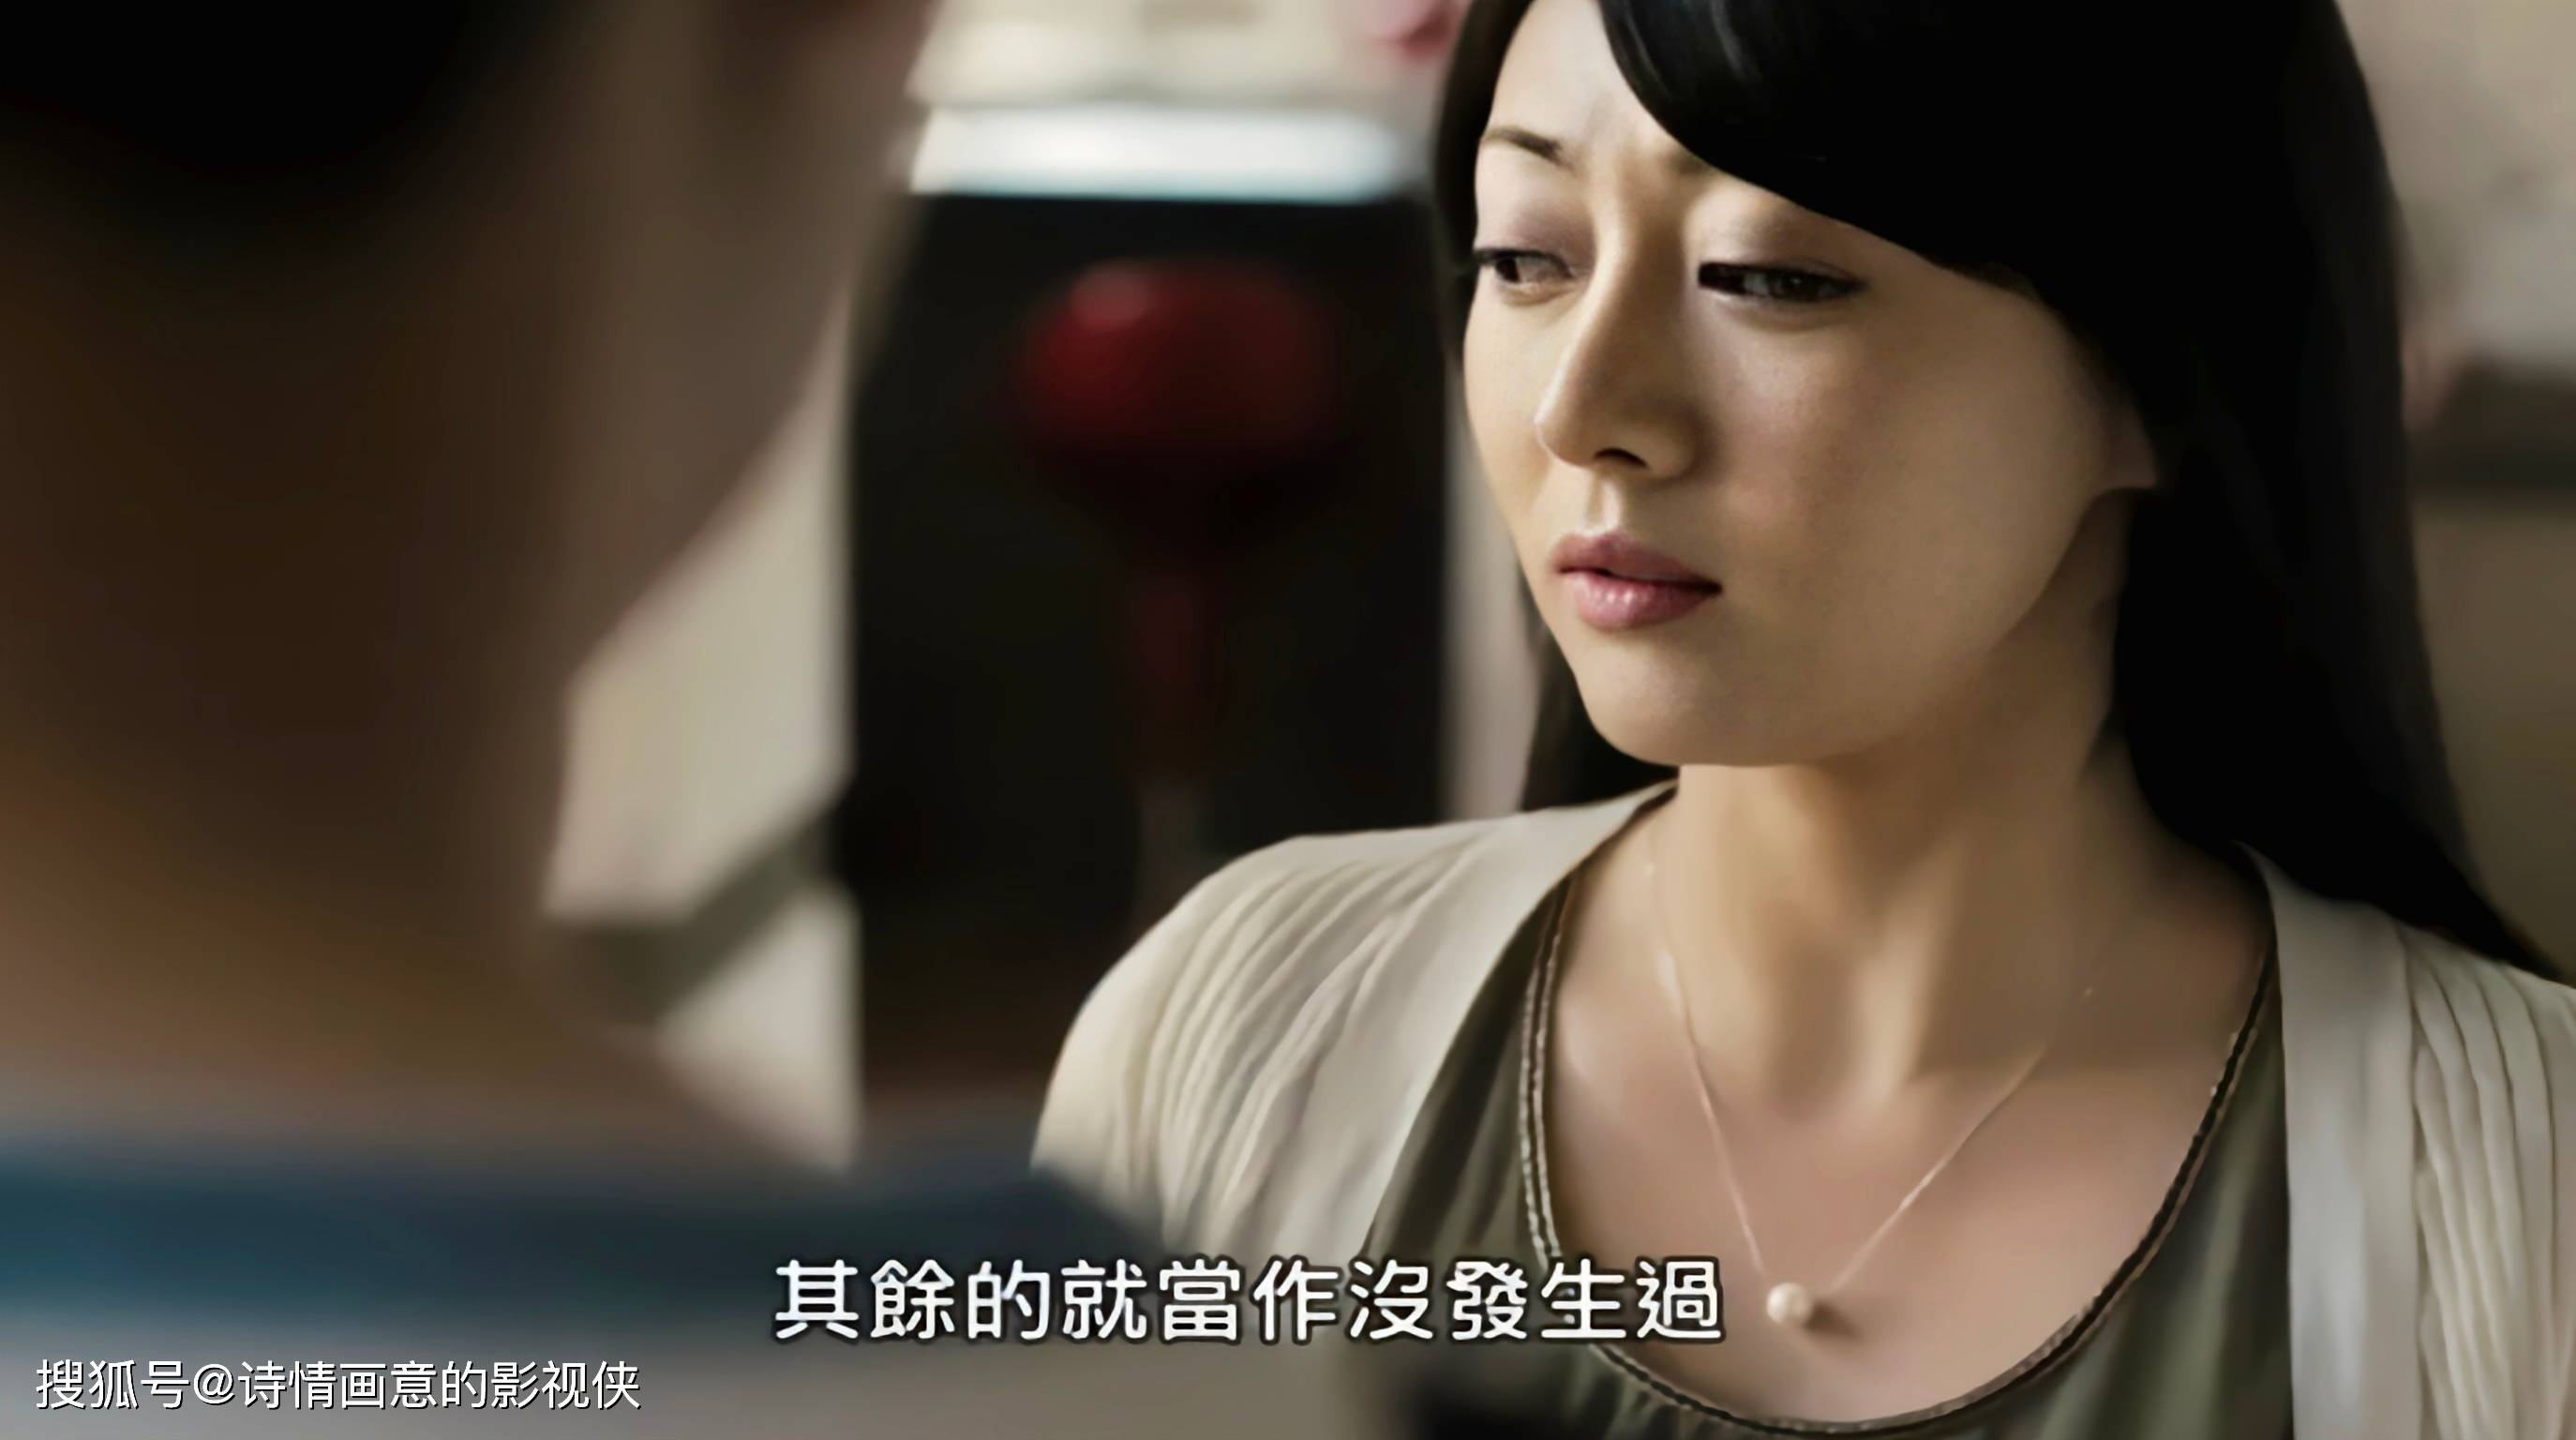 韩国18禁电影《新妈妈》:家庭伦理的迷局与情感的纠葛